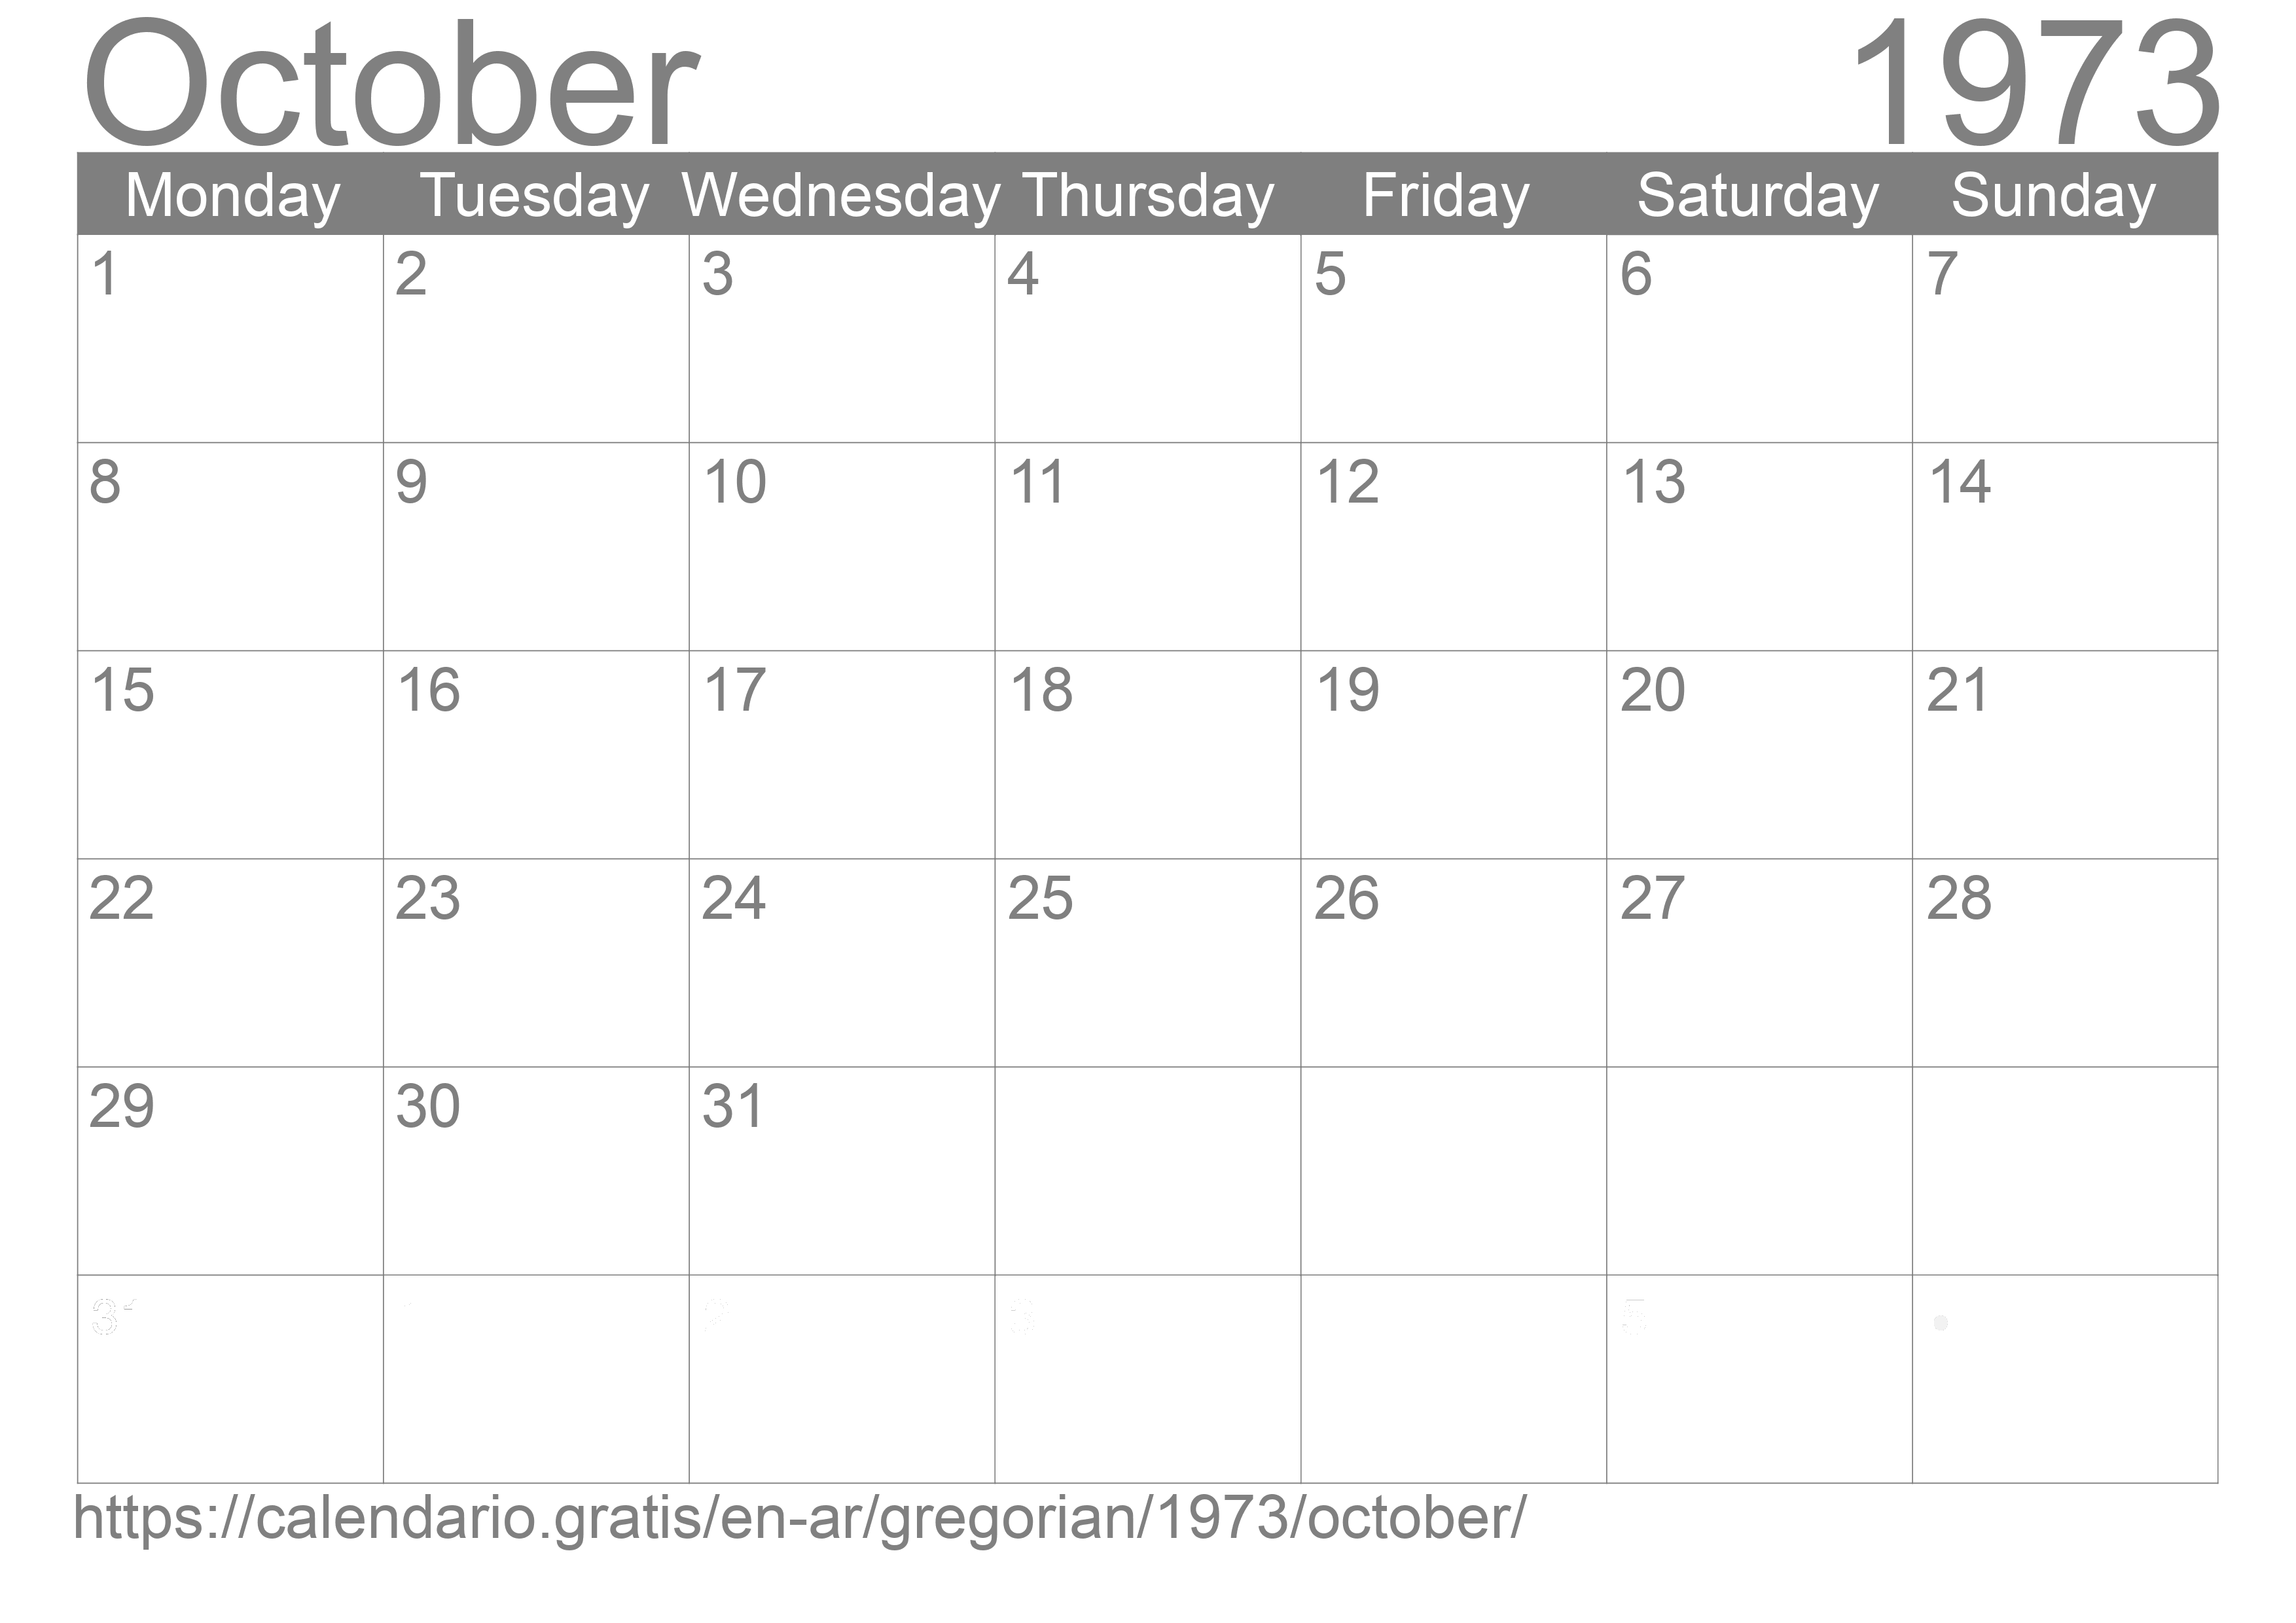 Calendar October 1973 to print